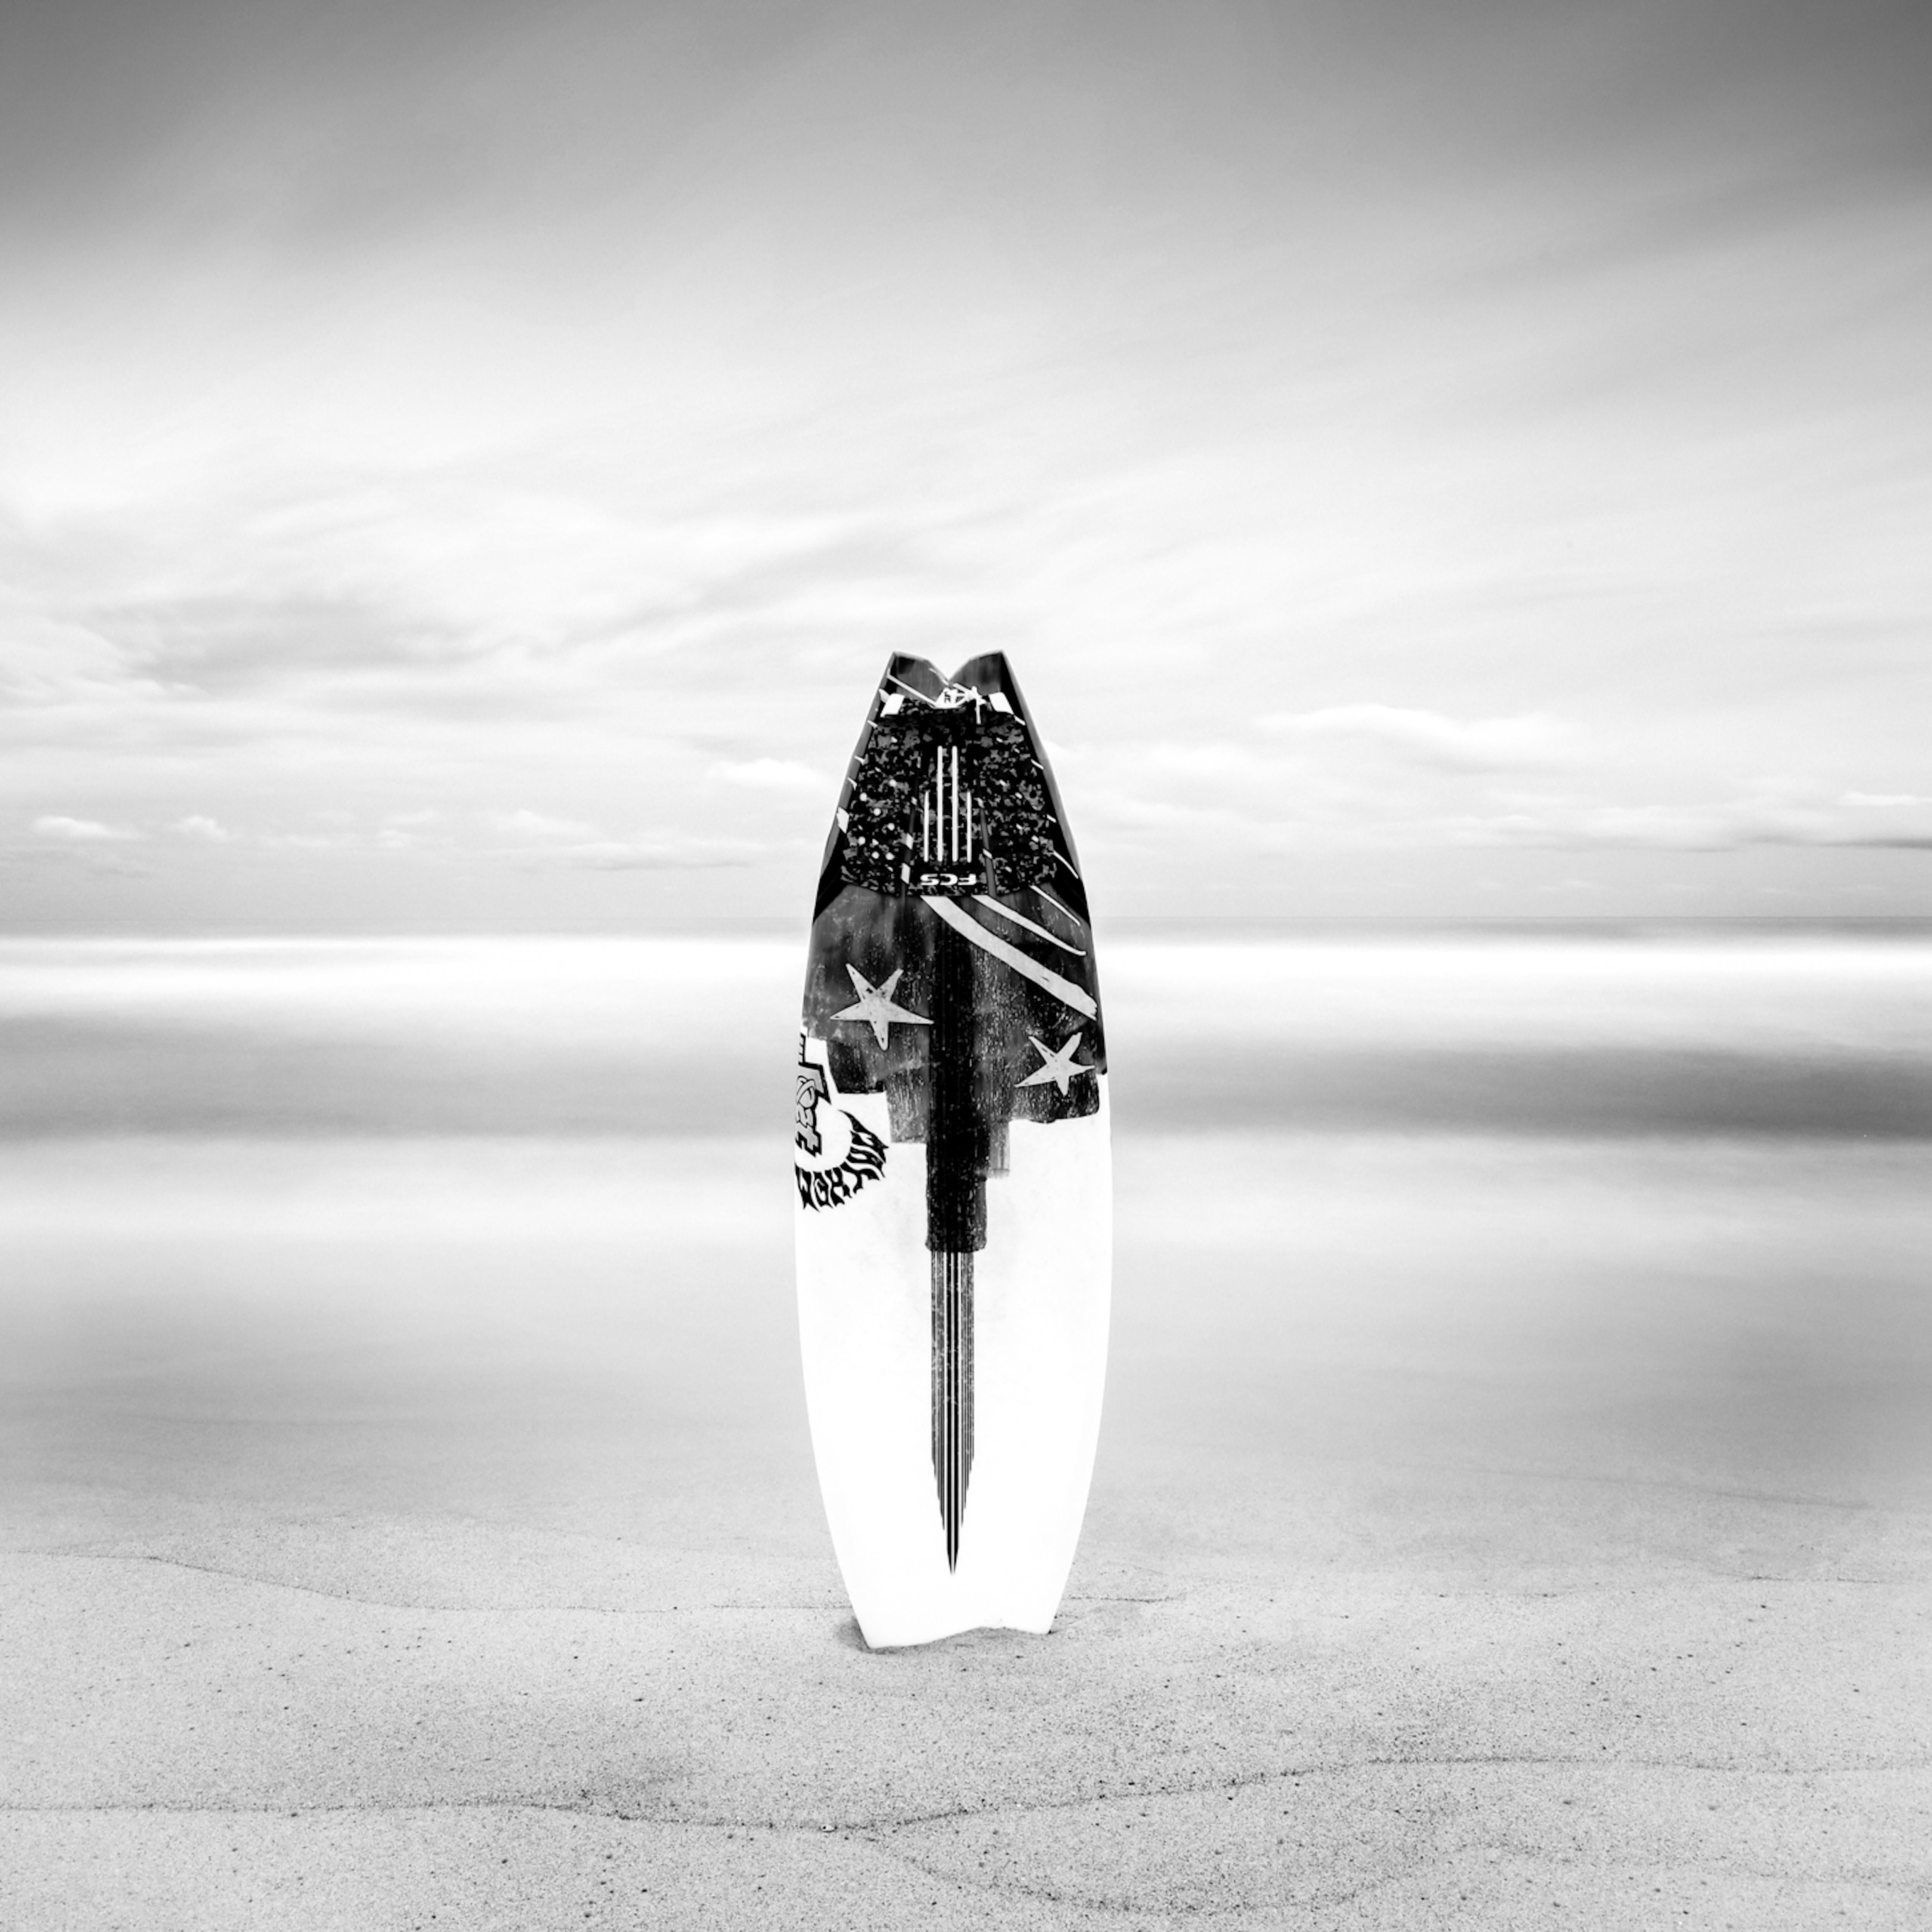 Surfboard at White Sands - Framed - Ltd Ed of 10